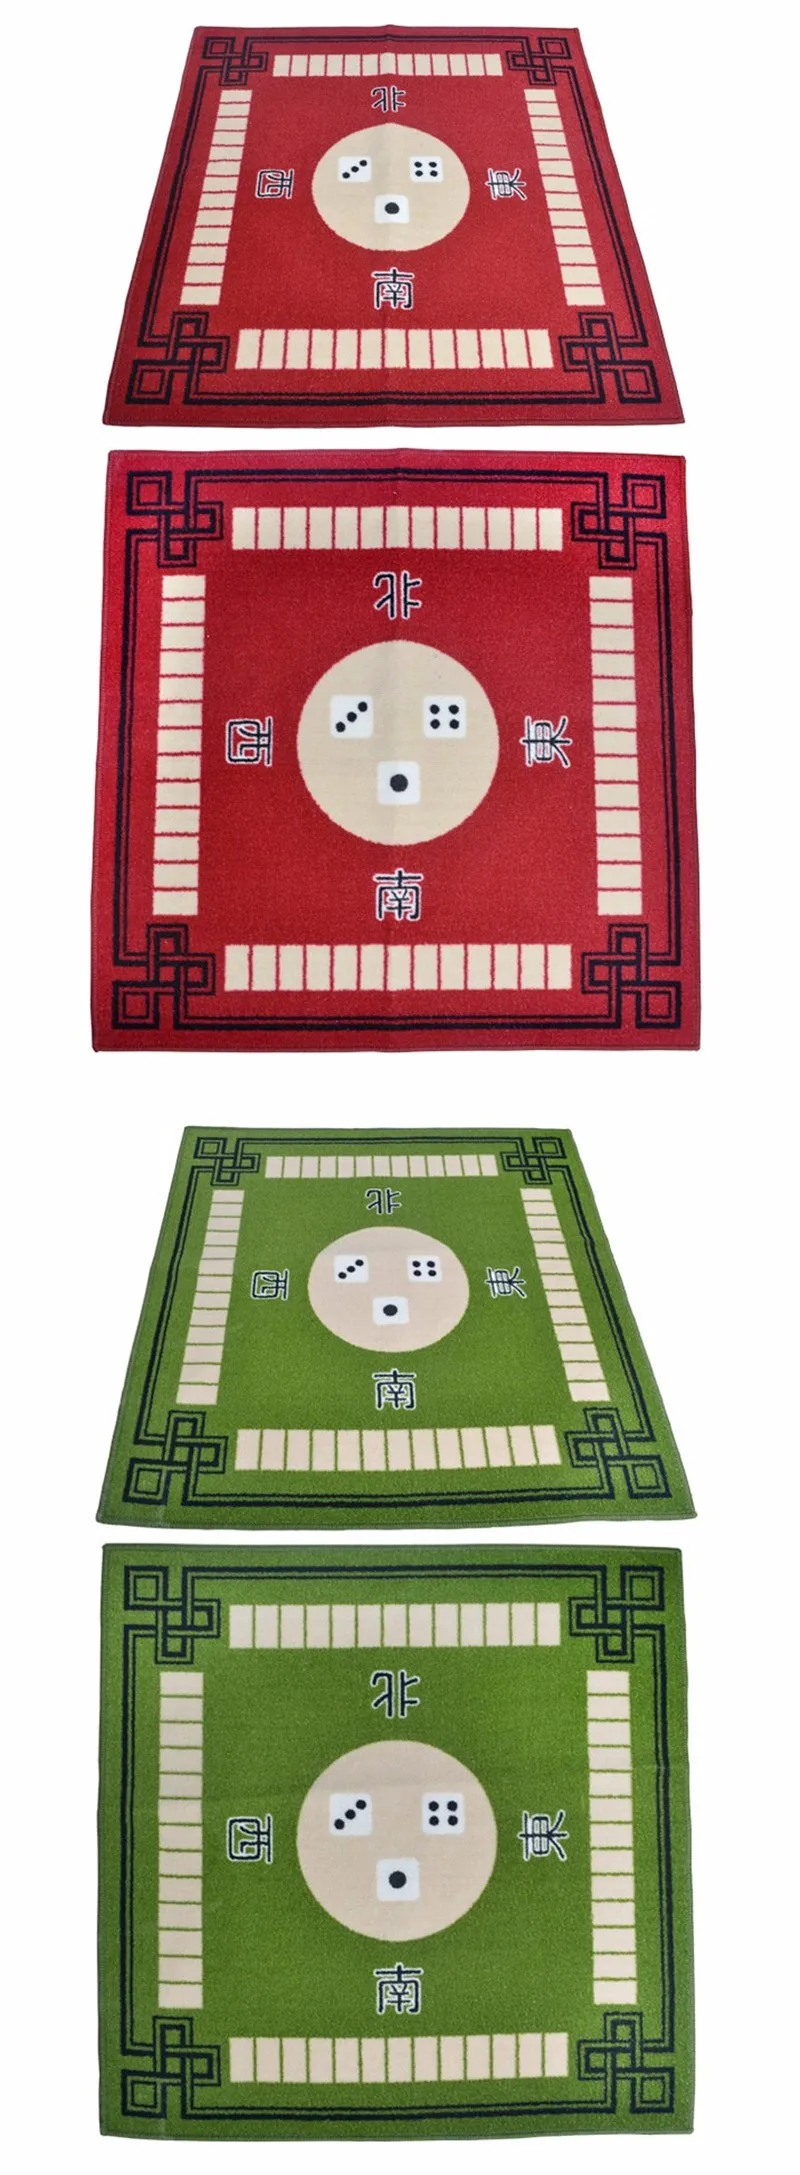 78X78 см маджонг игра мягкая тишина Противоскользящий коврик маджонг мАч-джонг Настольный коврик ковер 5 цветов Высокое качество латексные материалы